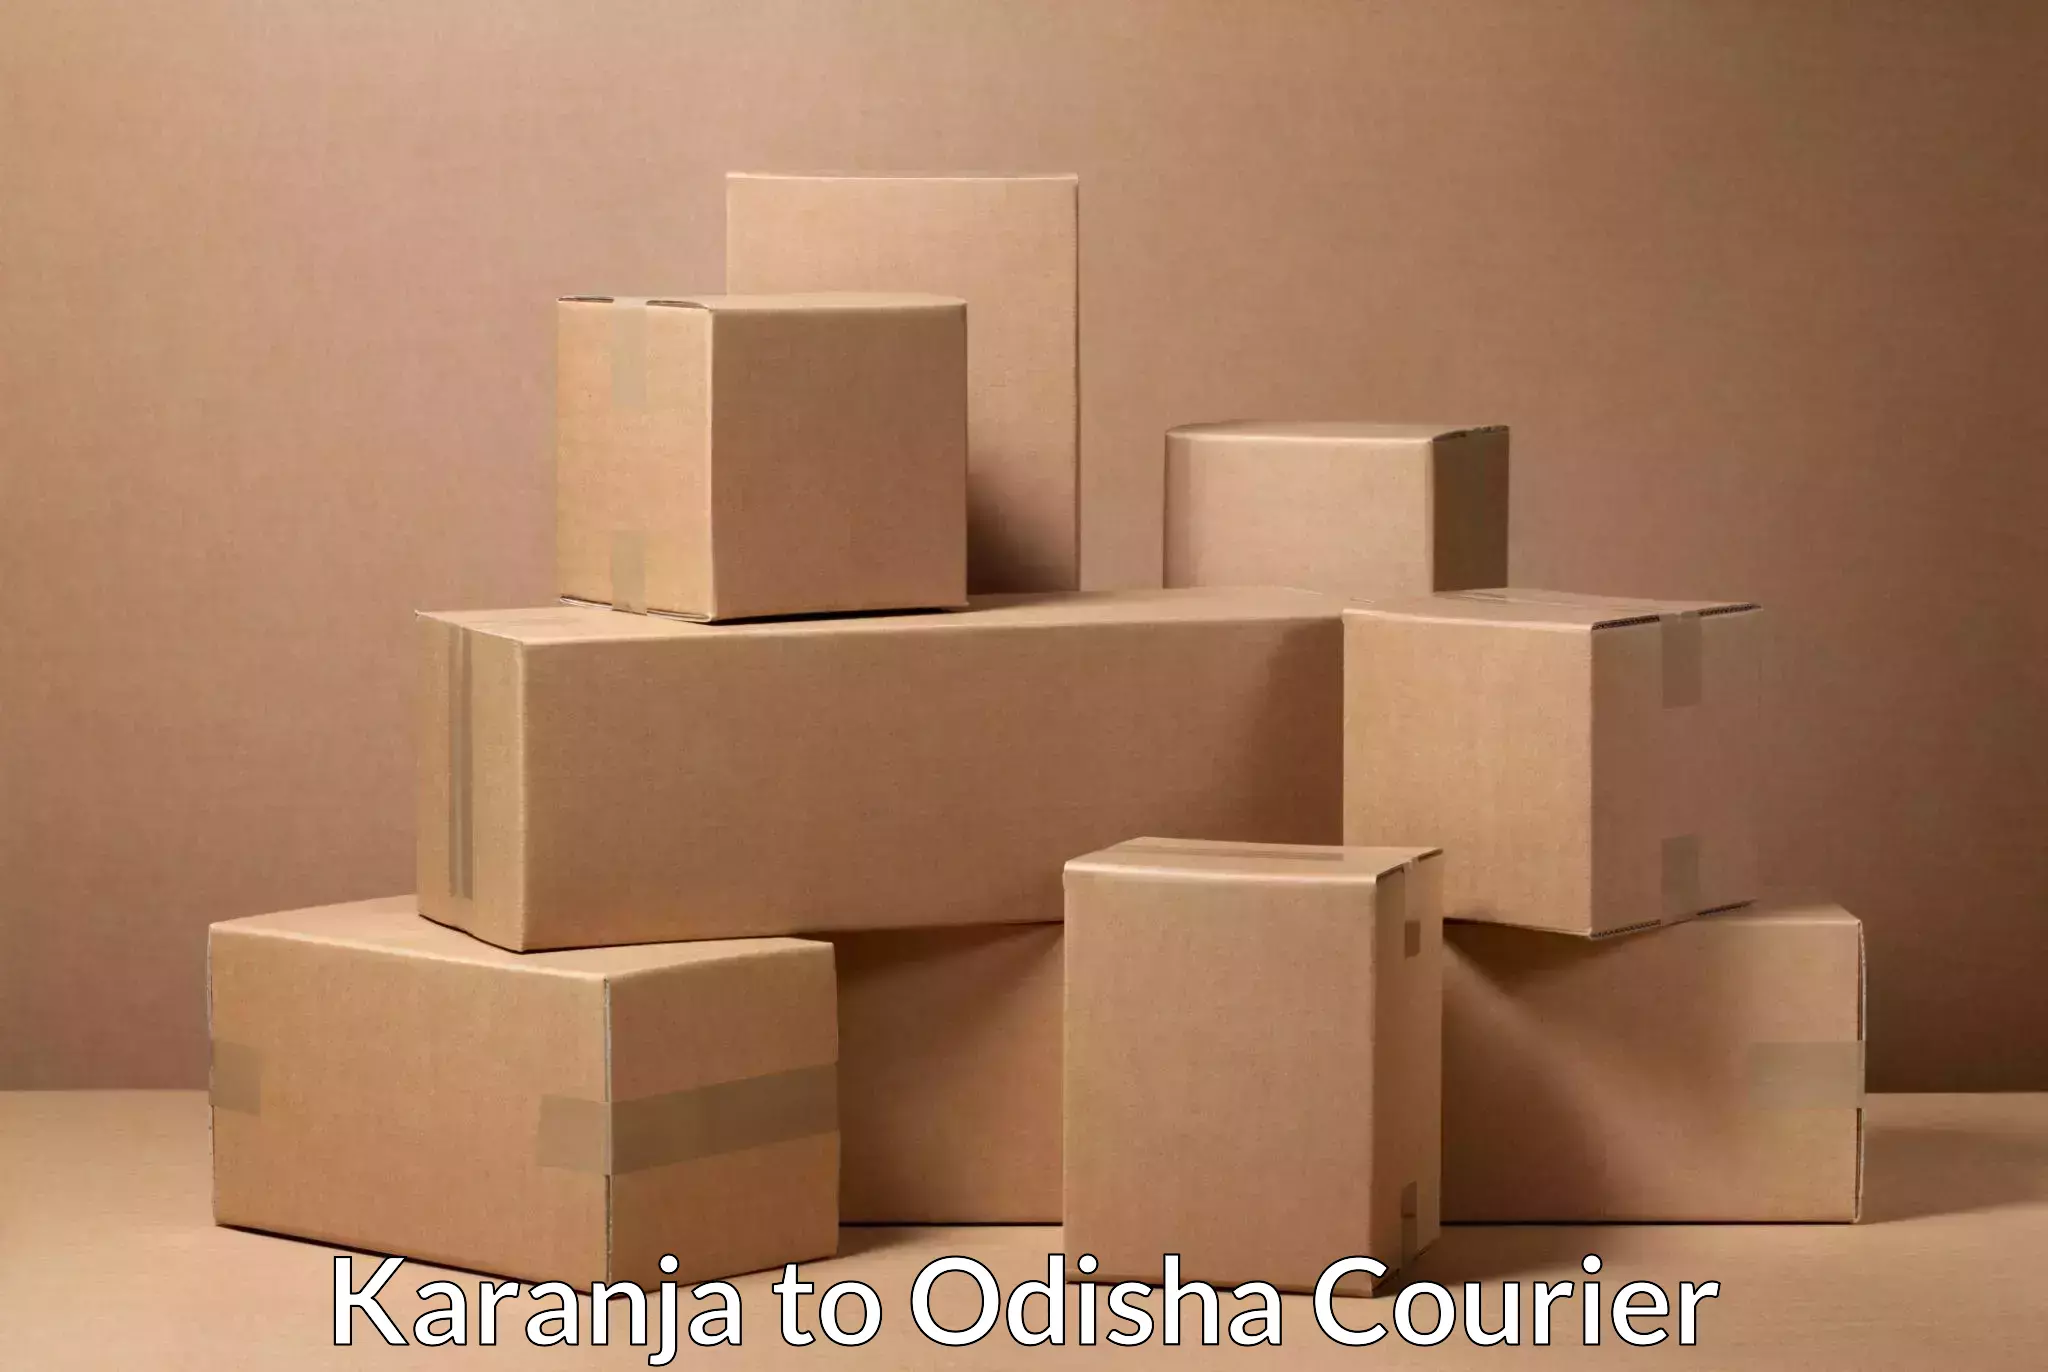 Automated parcel services Karanja to Agarpada